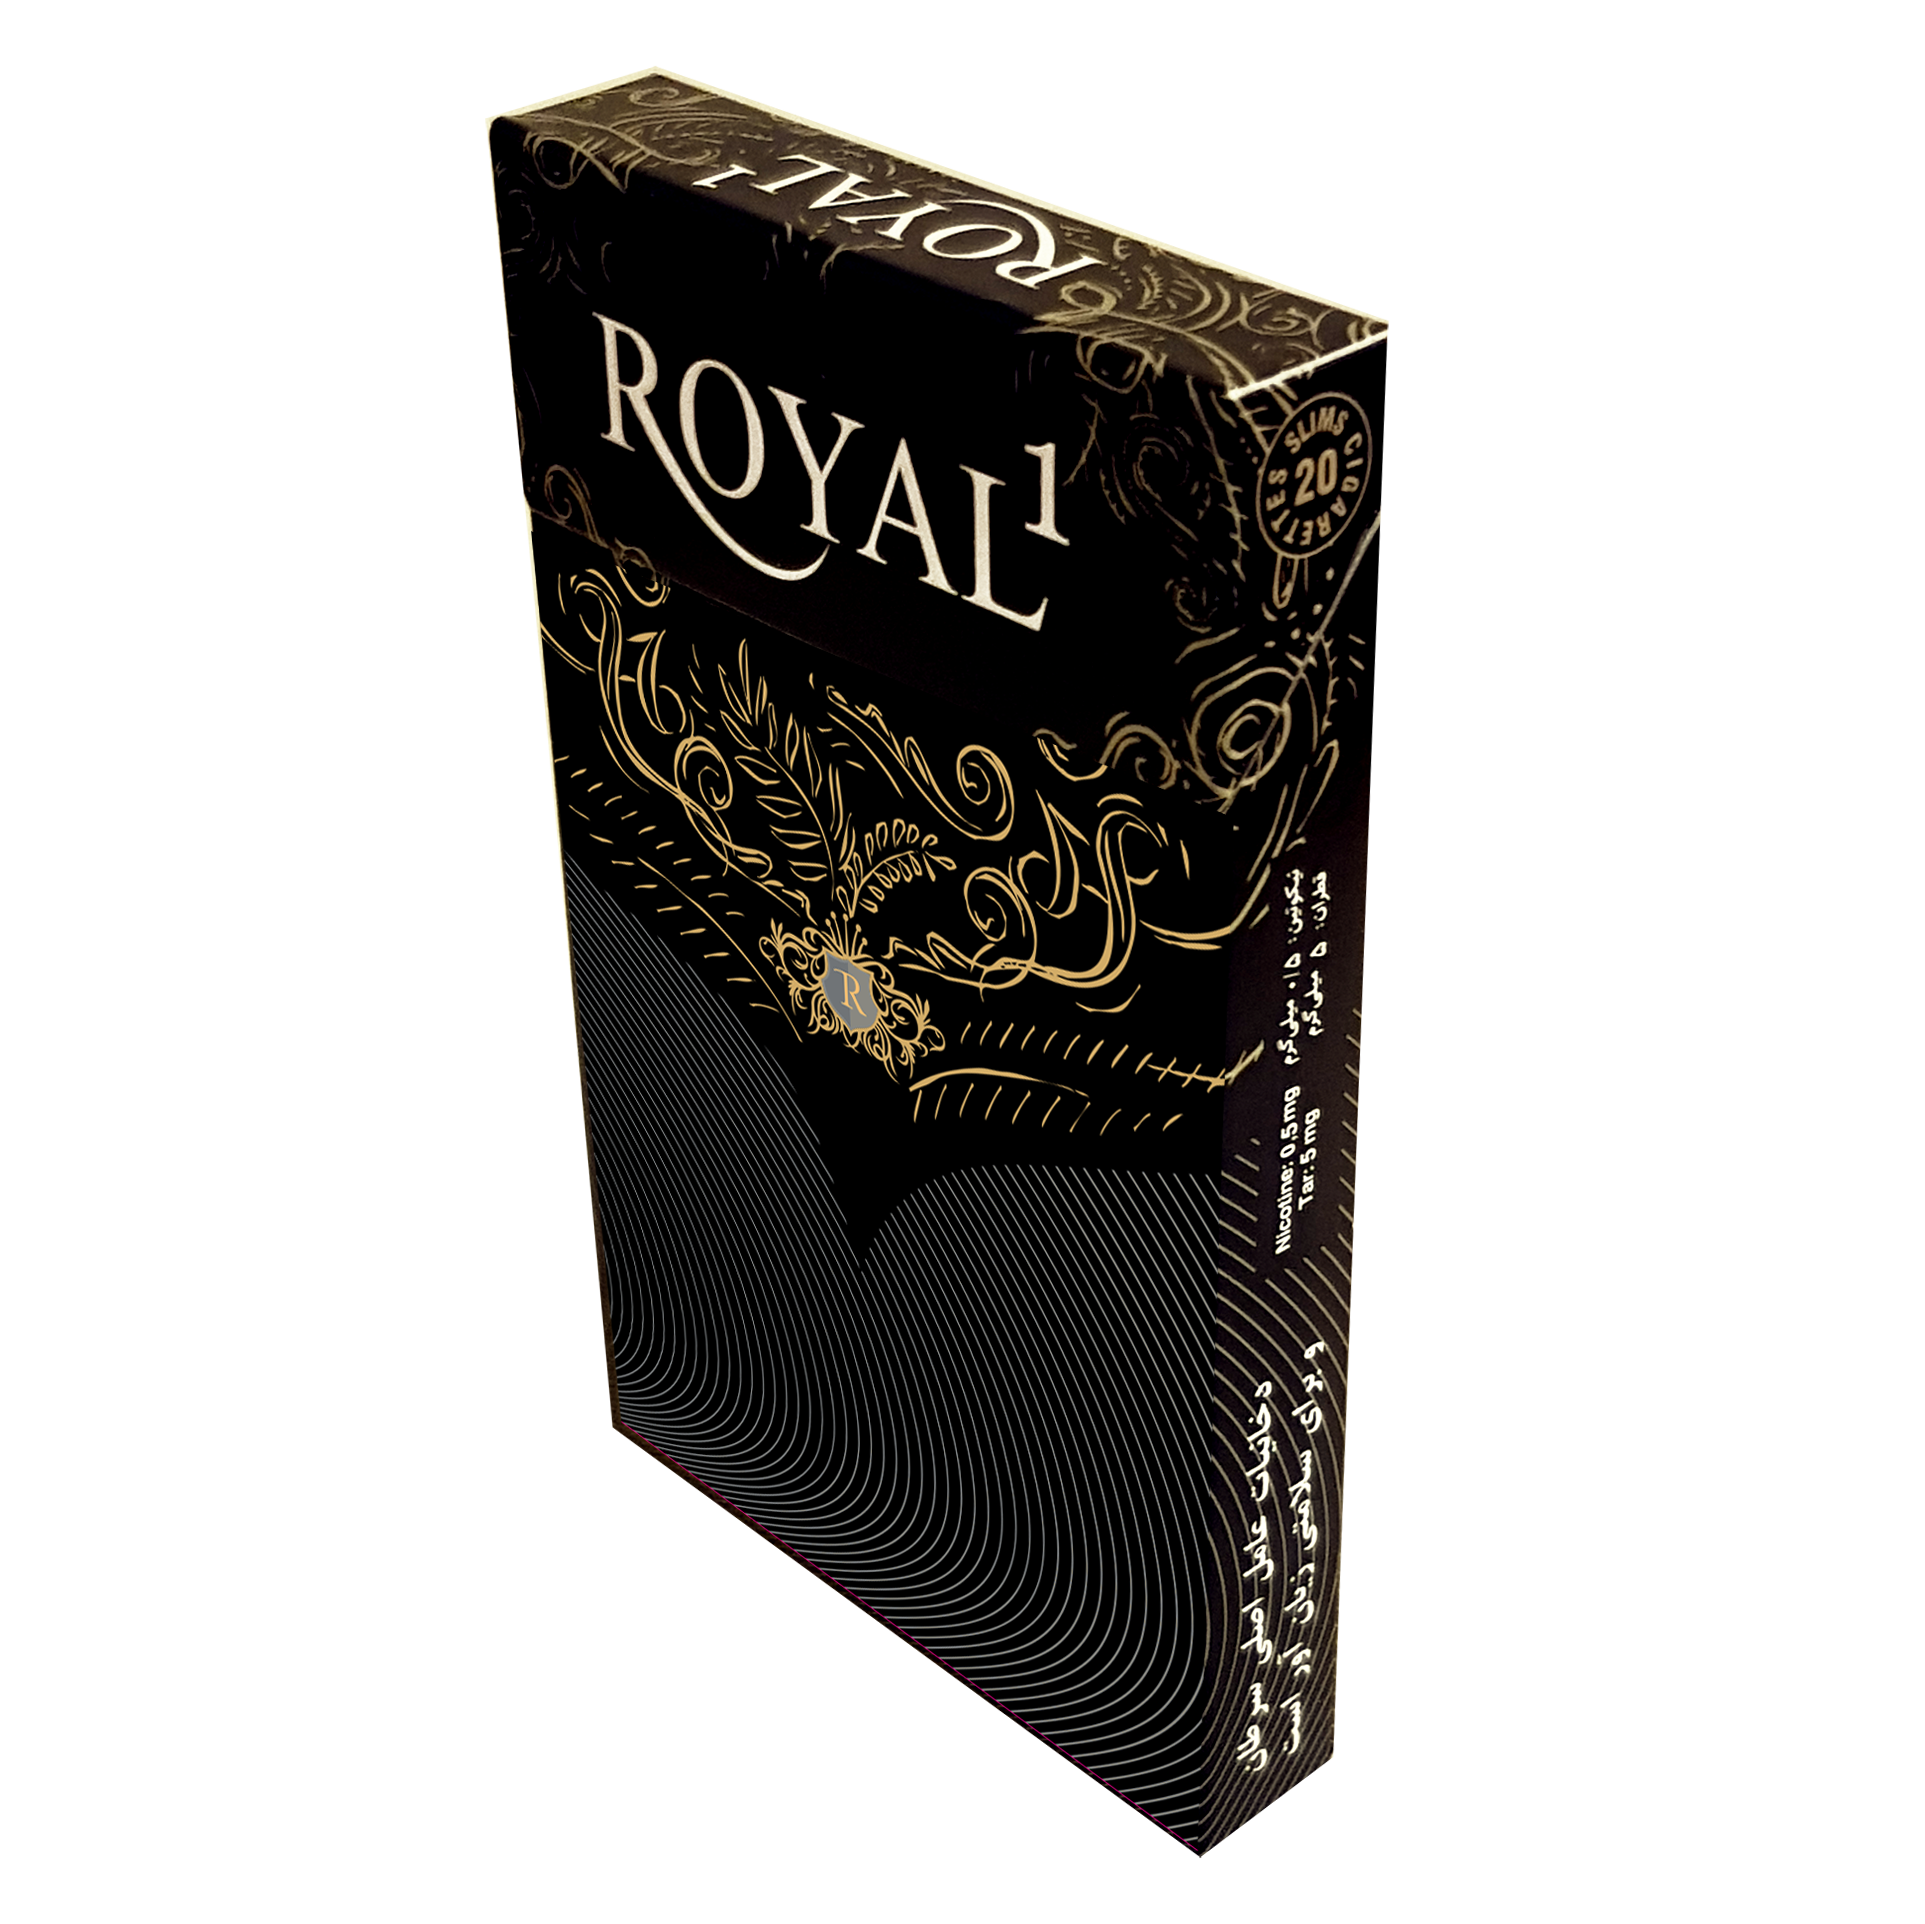  Royal1 Black Slim 